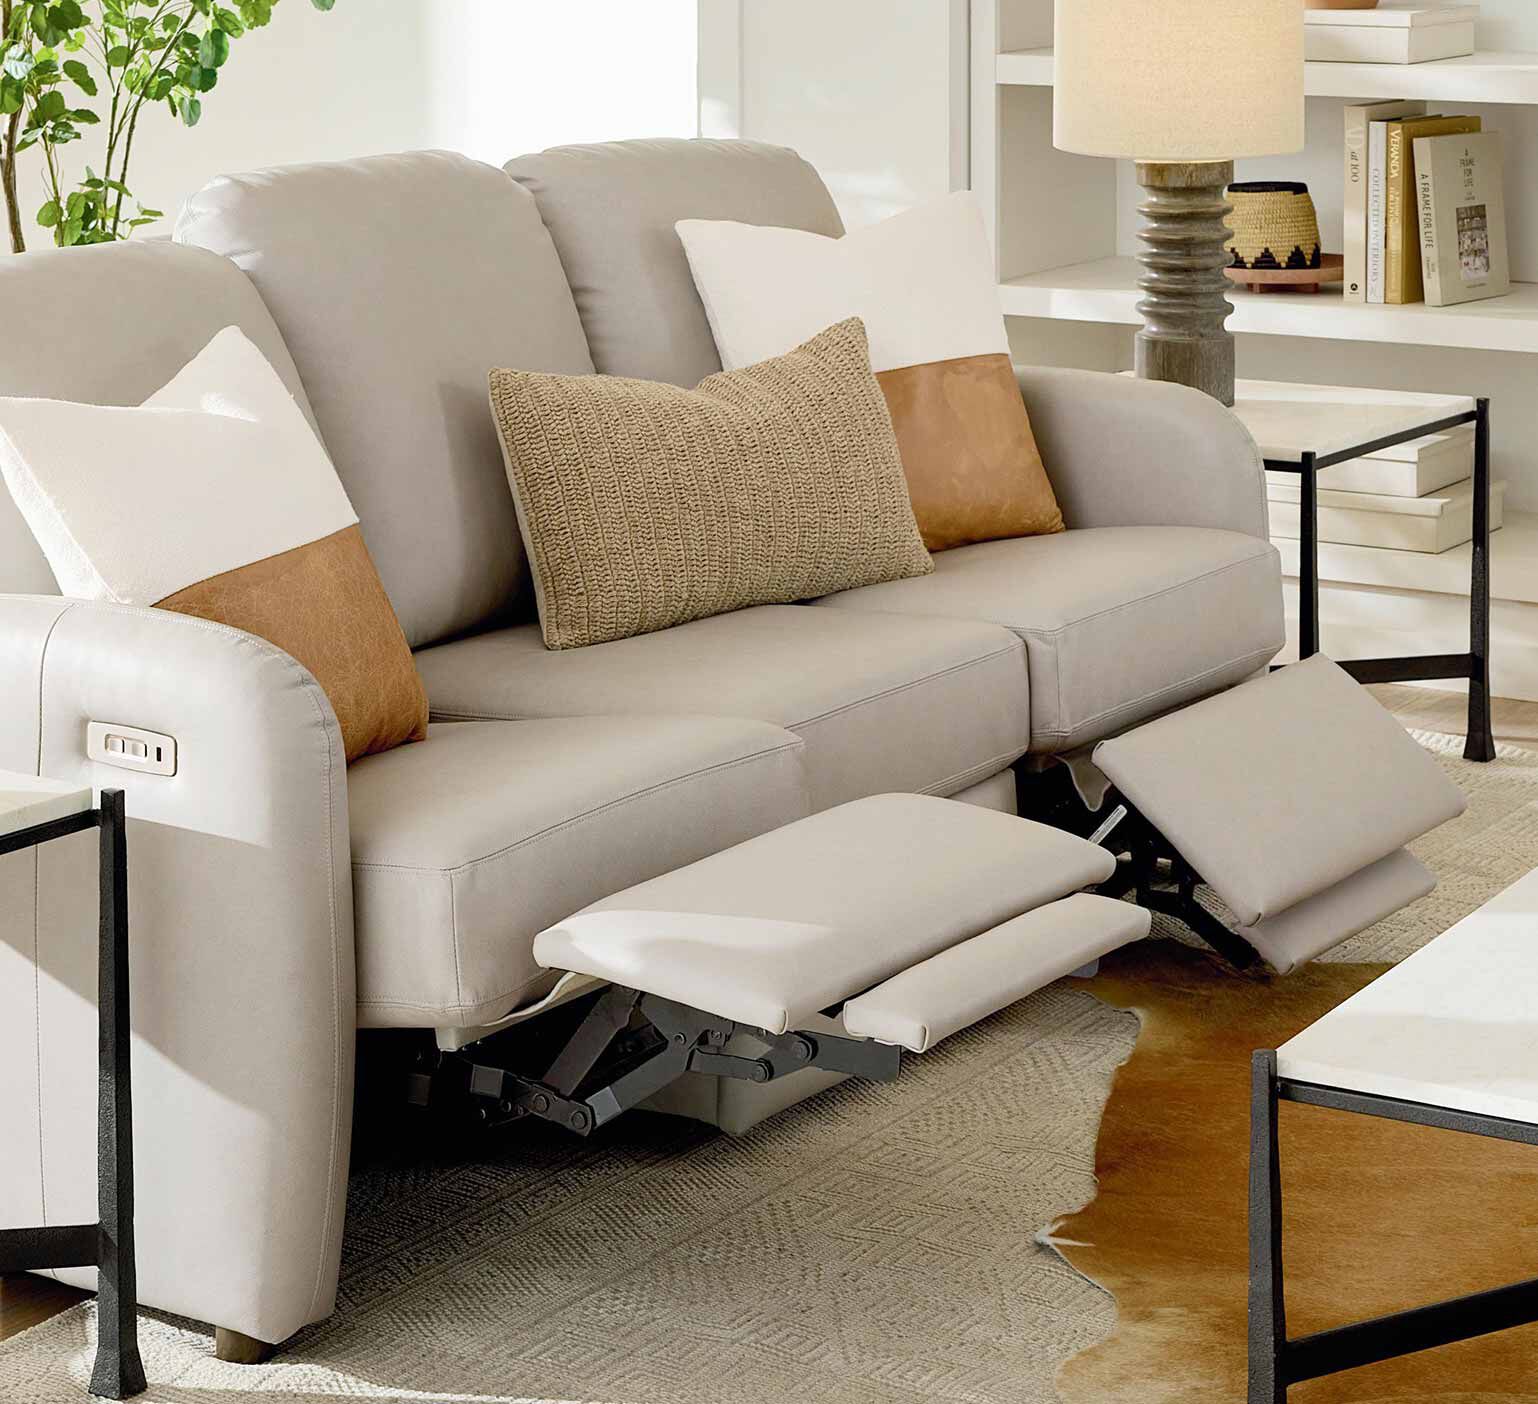 Furniture Sofa Support Cushions, Pads Furniture, Furniture Materia